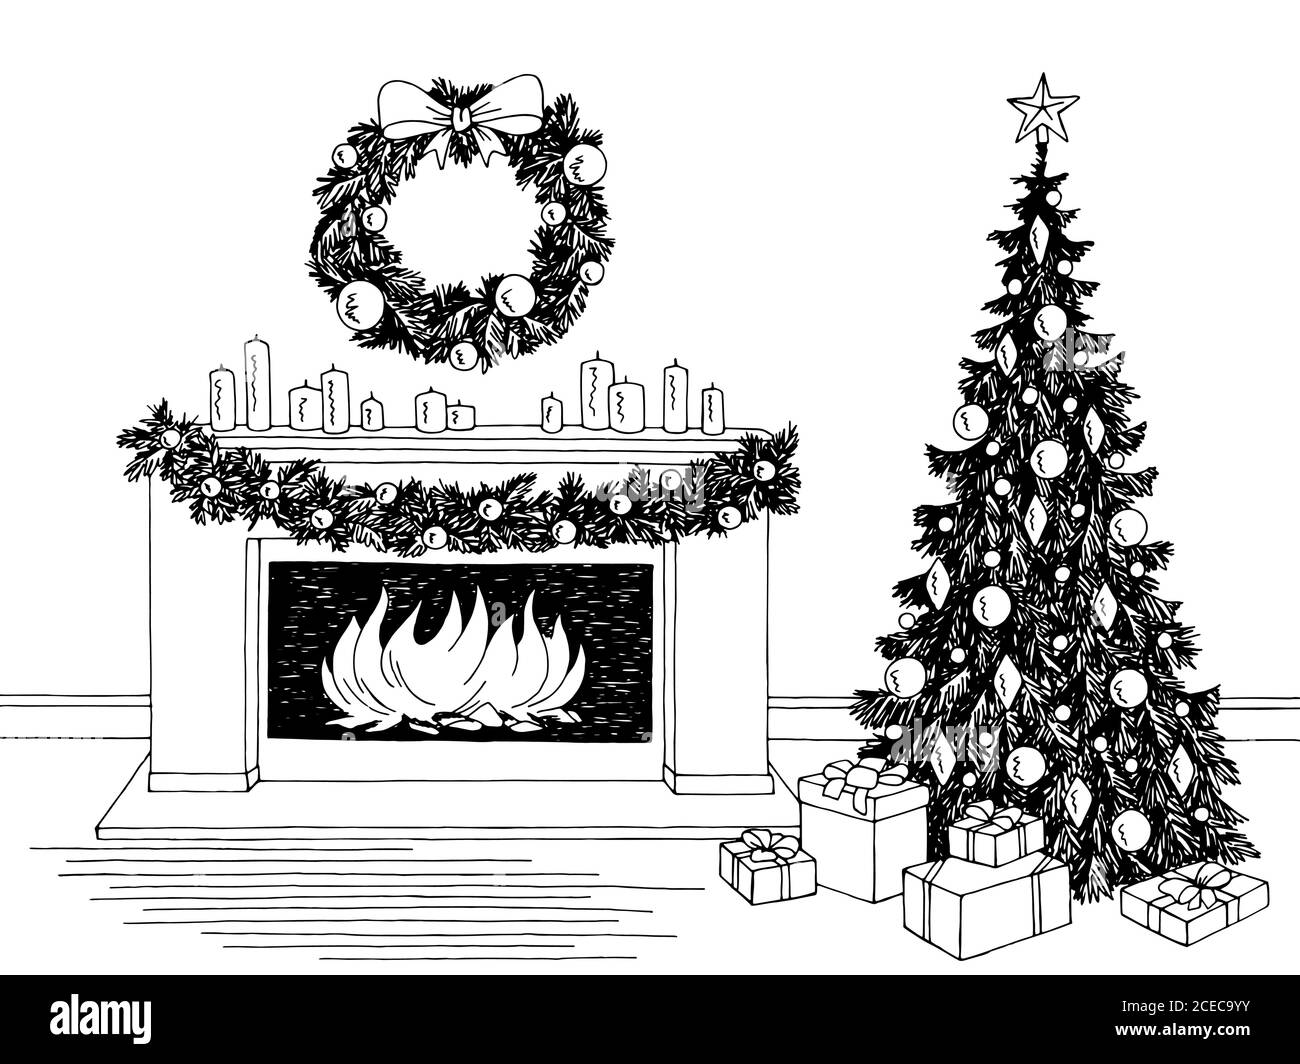 Salotto grafico albero di Natale camino nero bianco disegno interno vettore di illustrazione Illustrazione Vettoriale